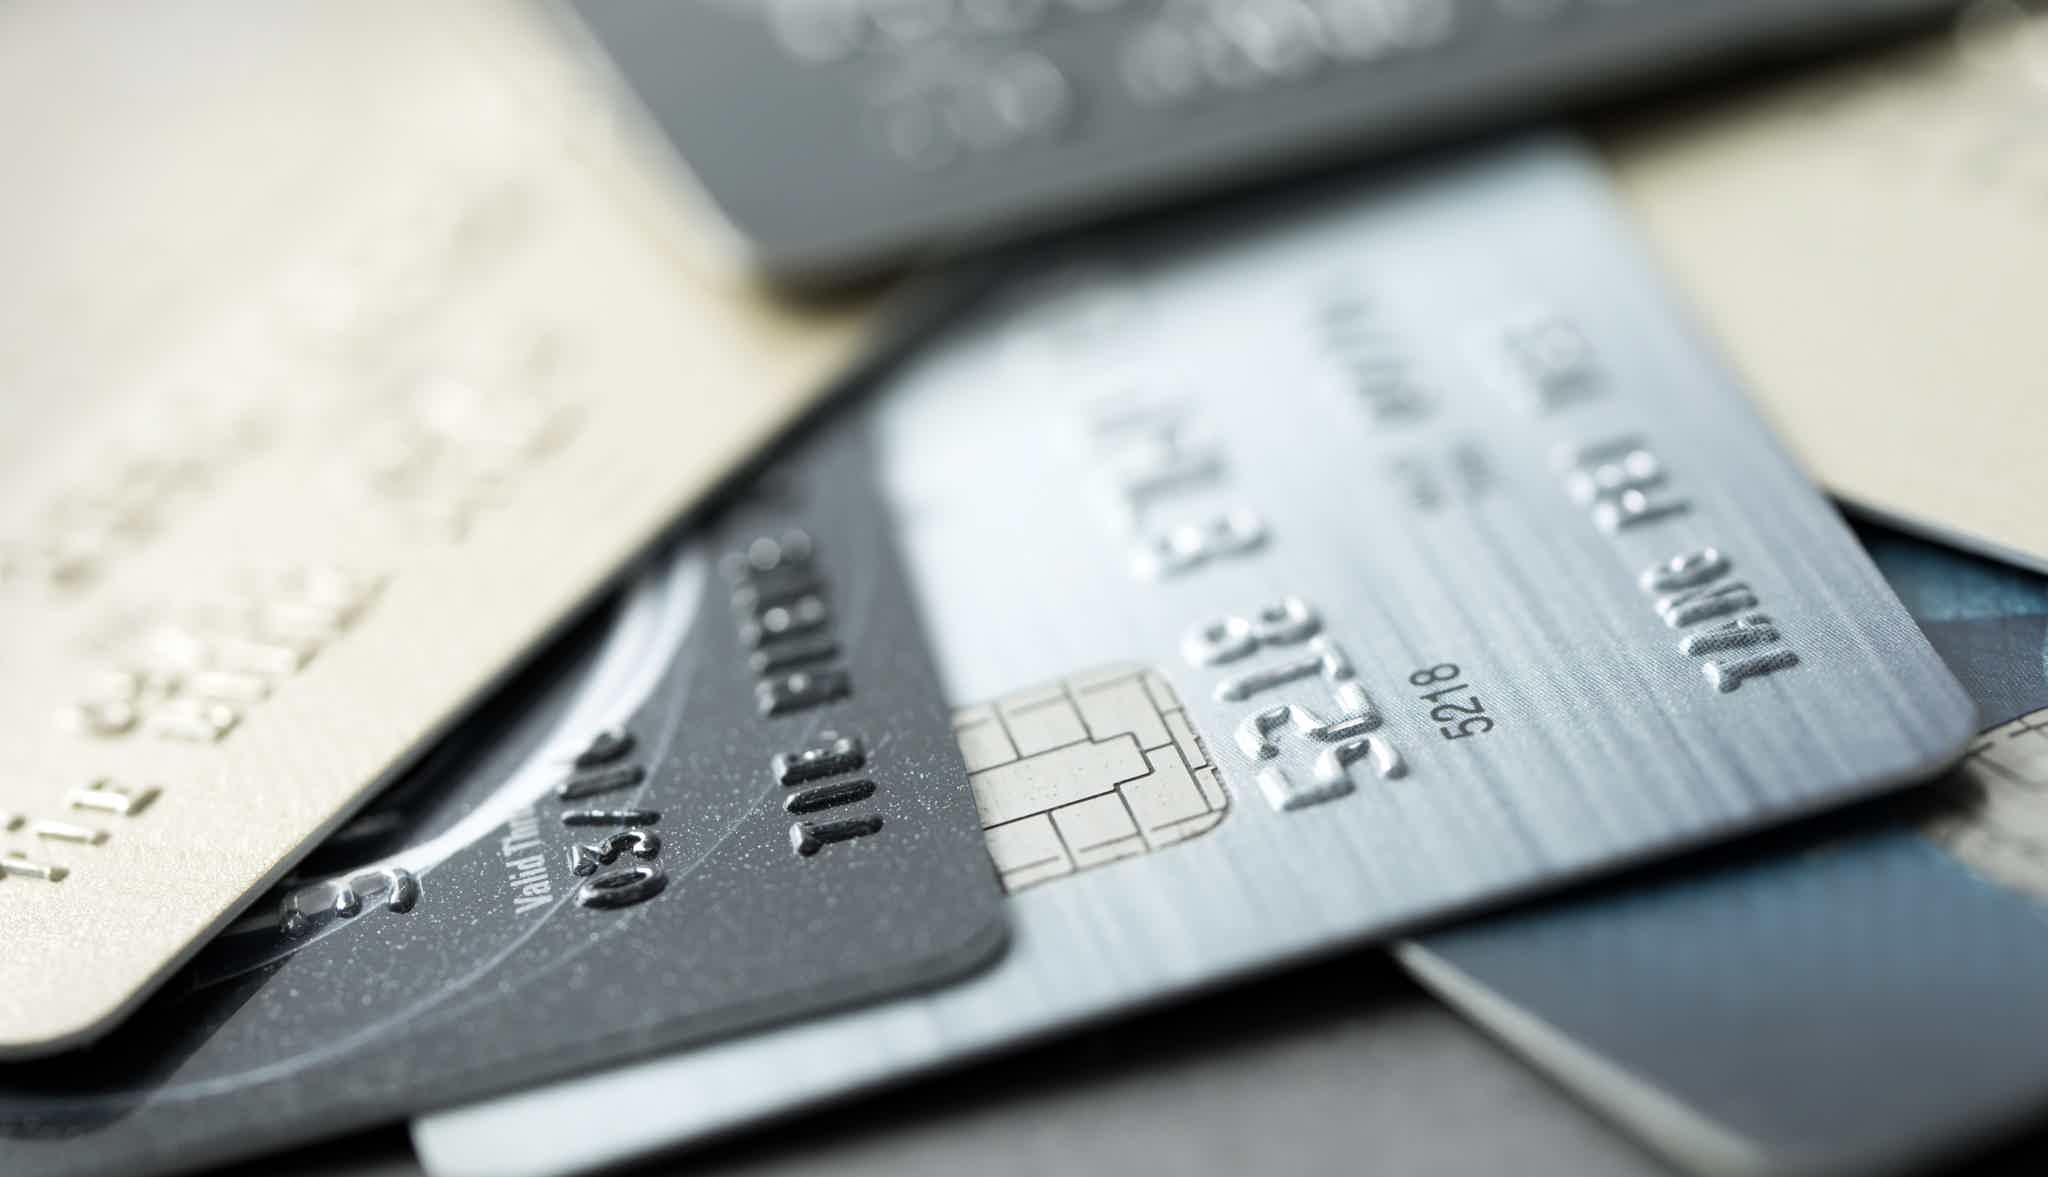 Mudar de endereço ajuda a conseguir um cartão de crédito? Fonte: Adobe Stock.